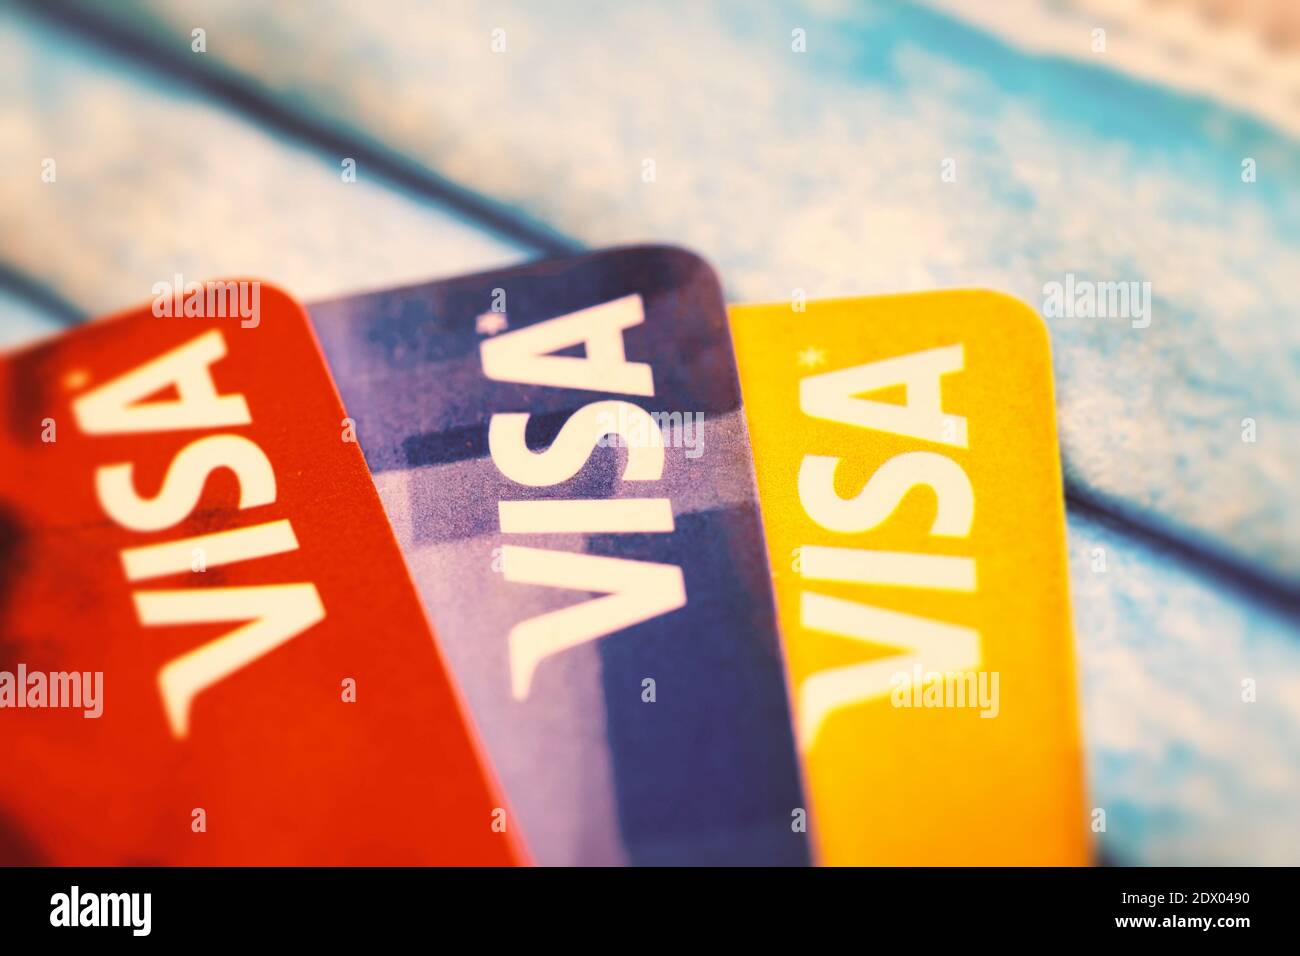 Cartes de crédit Visa sur un masque de protection. Un concept de dette pendant la pandémie de Covid-19 Banque D'Images